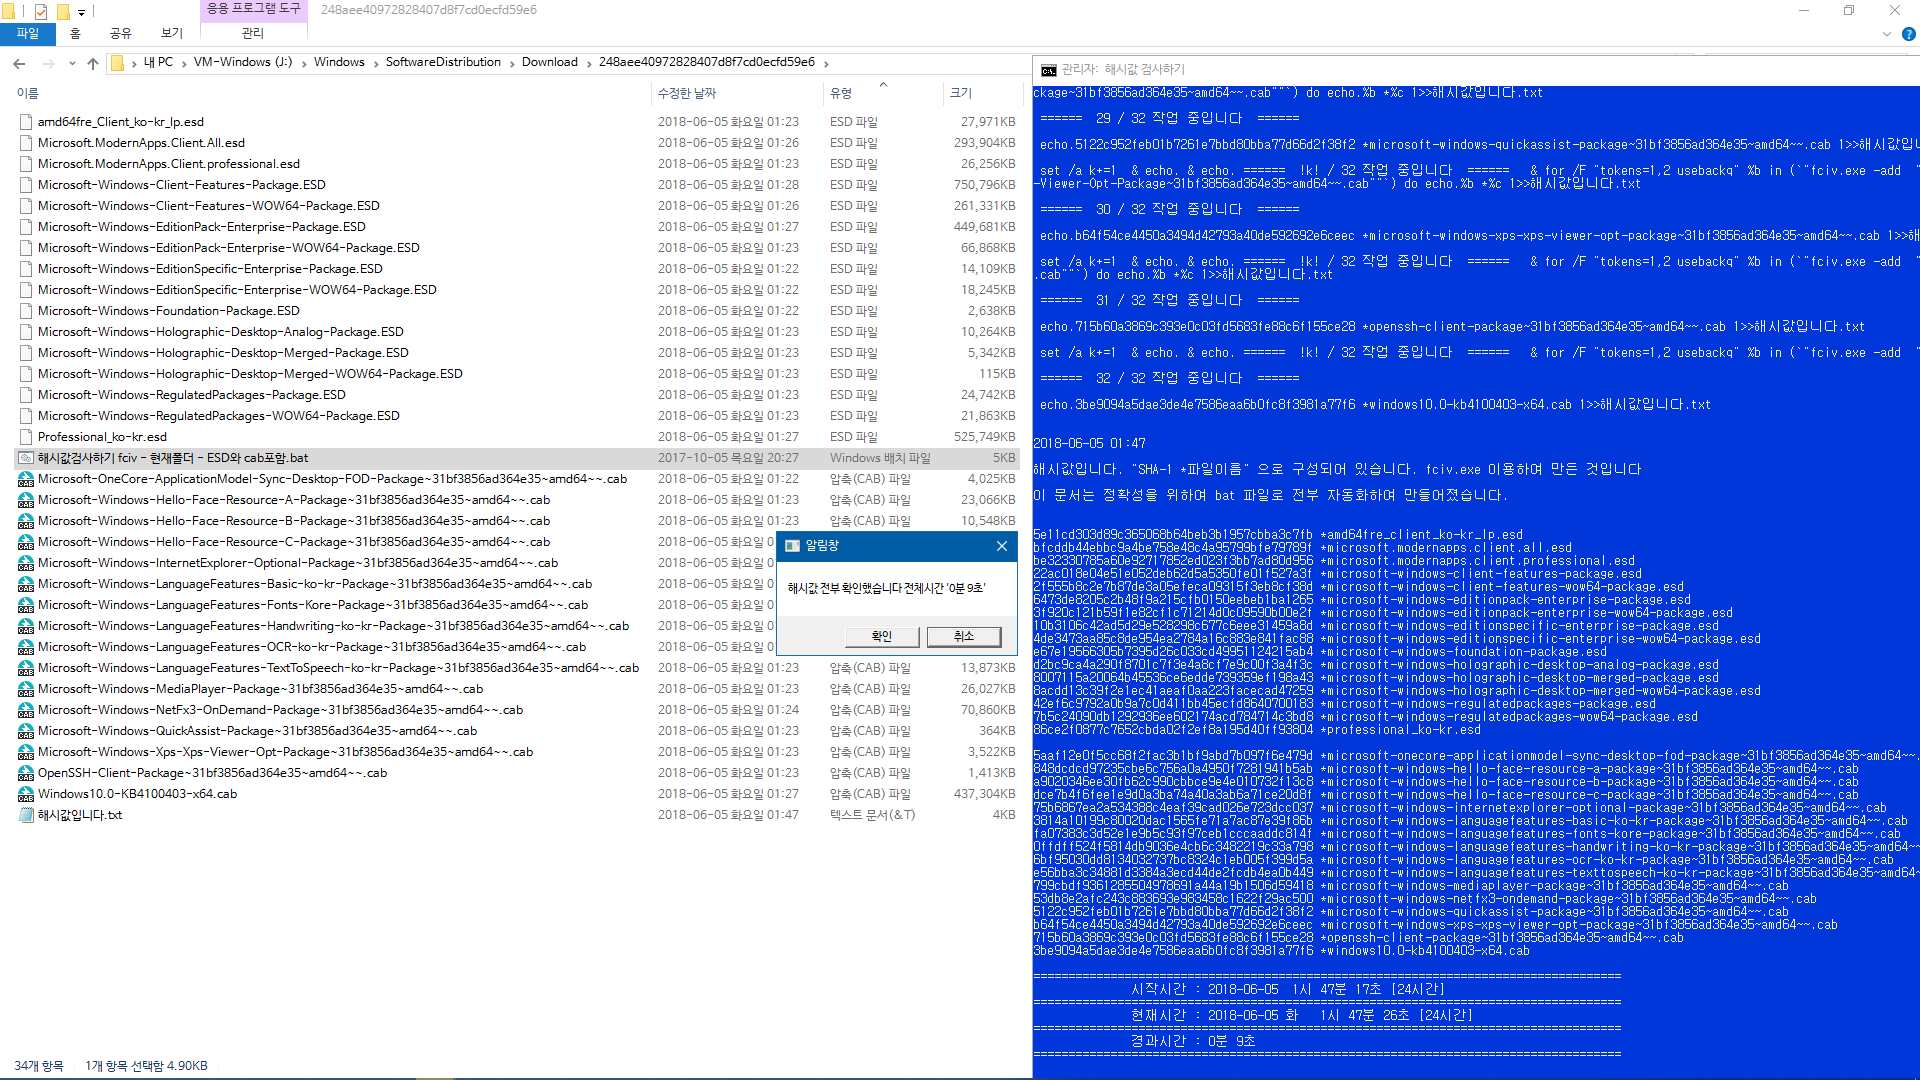 Windows 10 인사이더 프리뷰 RTM 때와 정식 출시 후에 윈도 업데이트 할 때 [업그레이드] 나오는 파일들이 다른지 확인합니다 - 현재 버전1803 RS4 레드스톤4 대상으로 확인 2018-06-05_014739.png